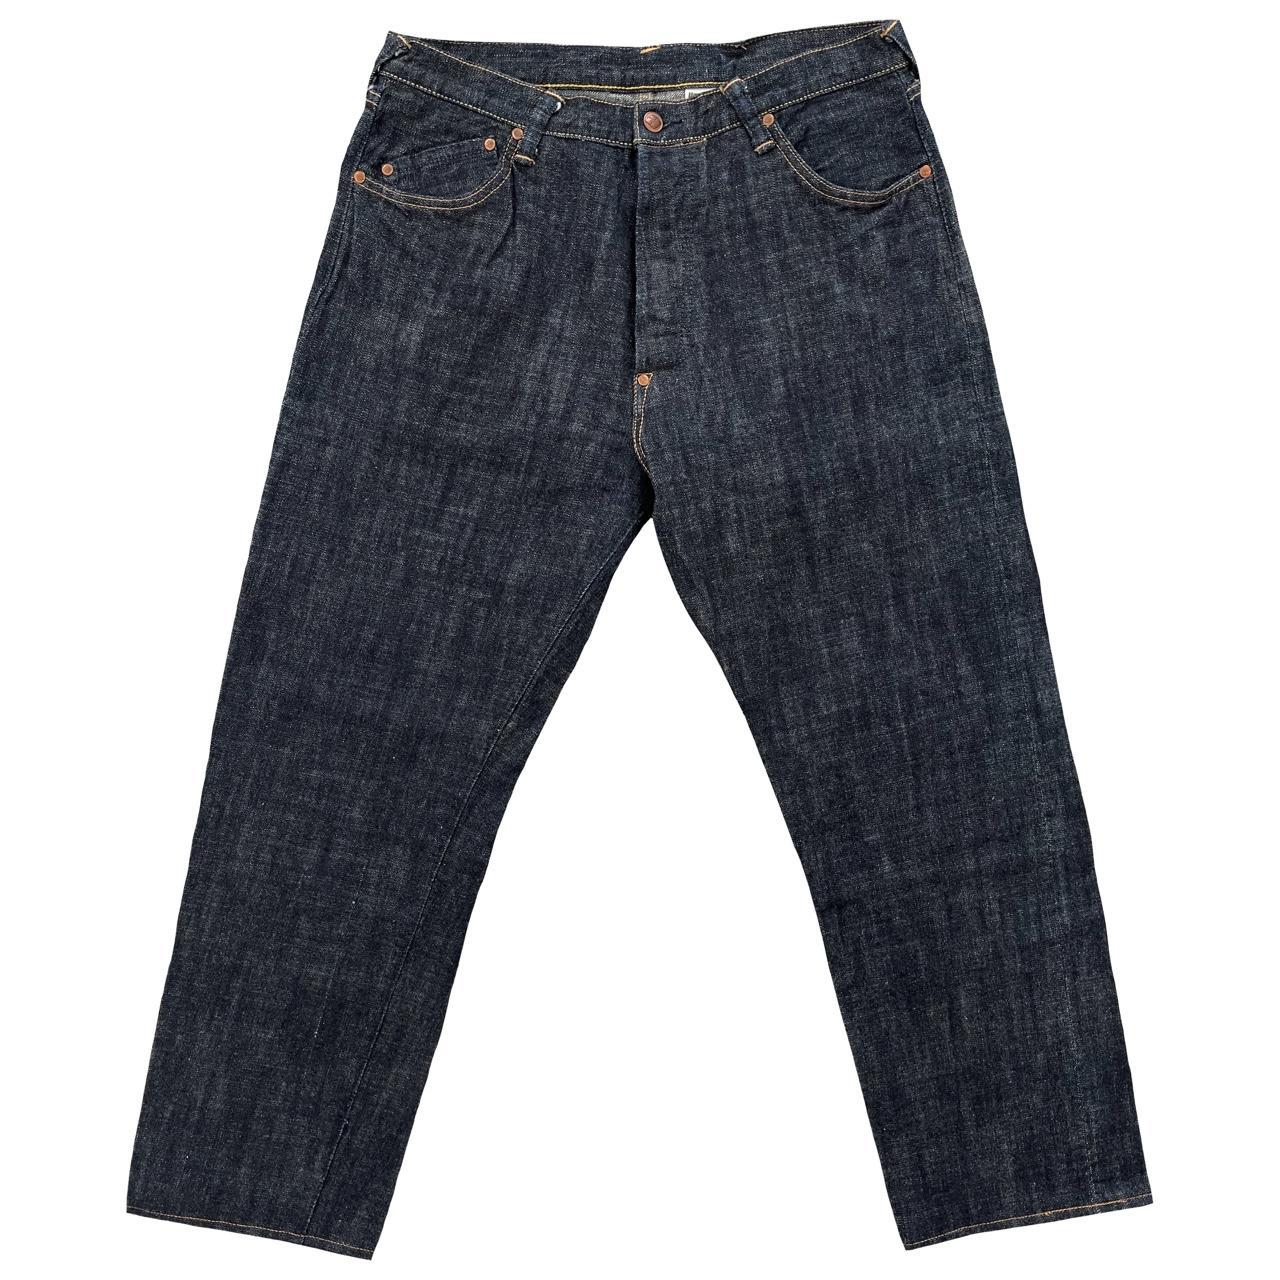 Evisu Selvedge Jeans